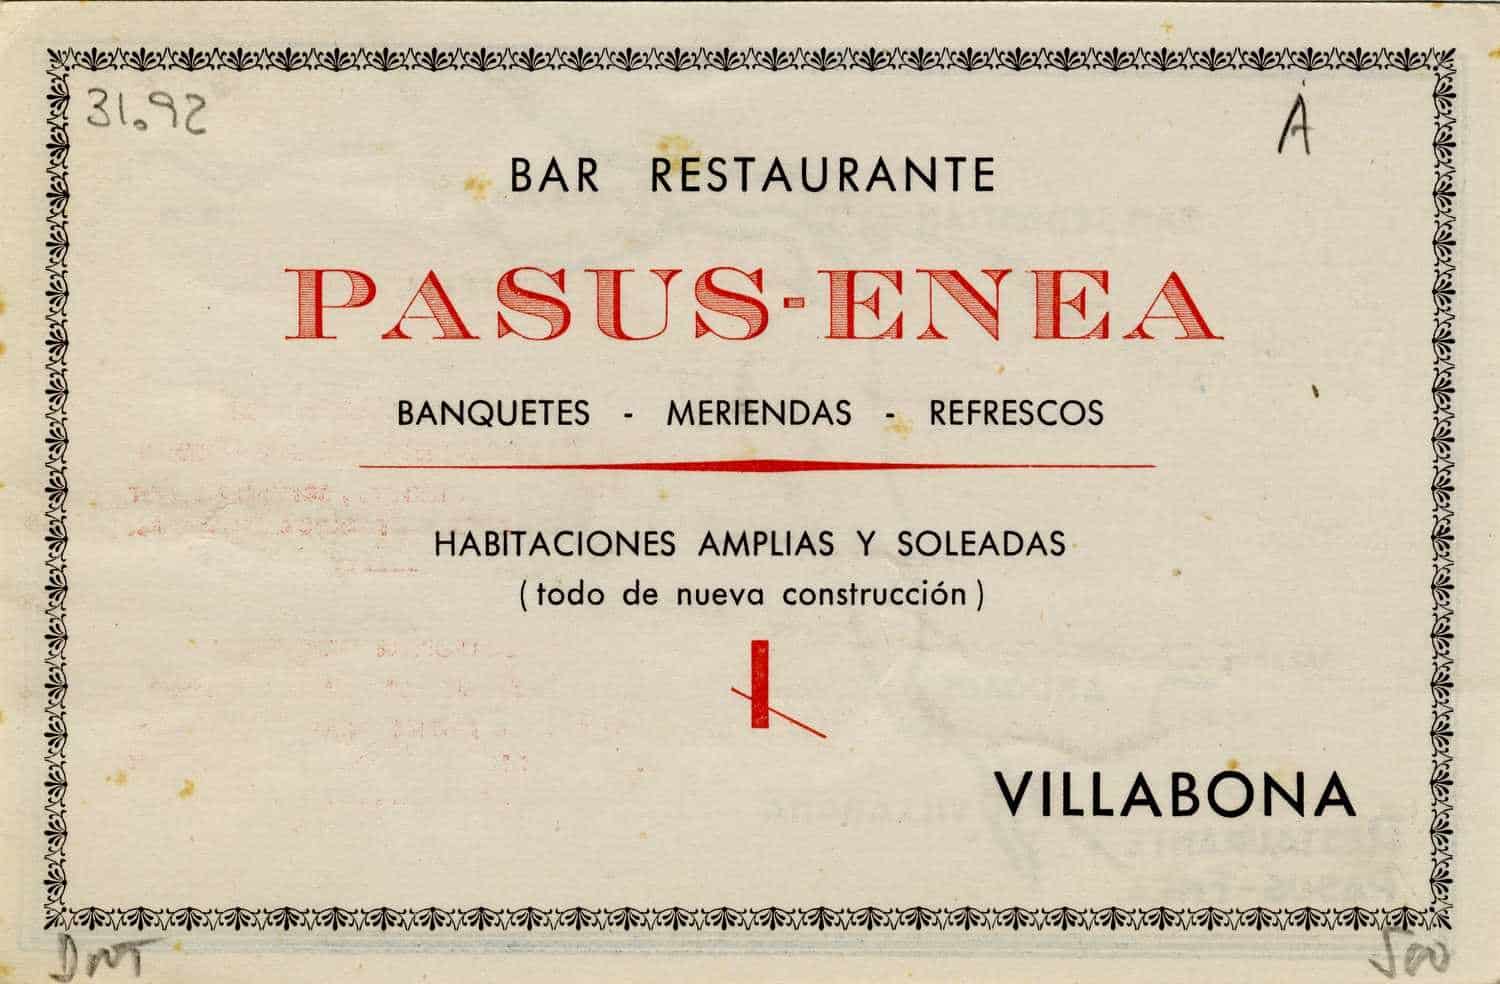 Villabona : Bar Restaurante Pasus-Enea : banquetes, meriendas, refrescos : habitaciones ámplias y soleadas [Material gráfico]